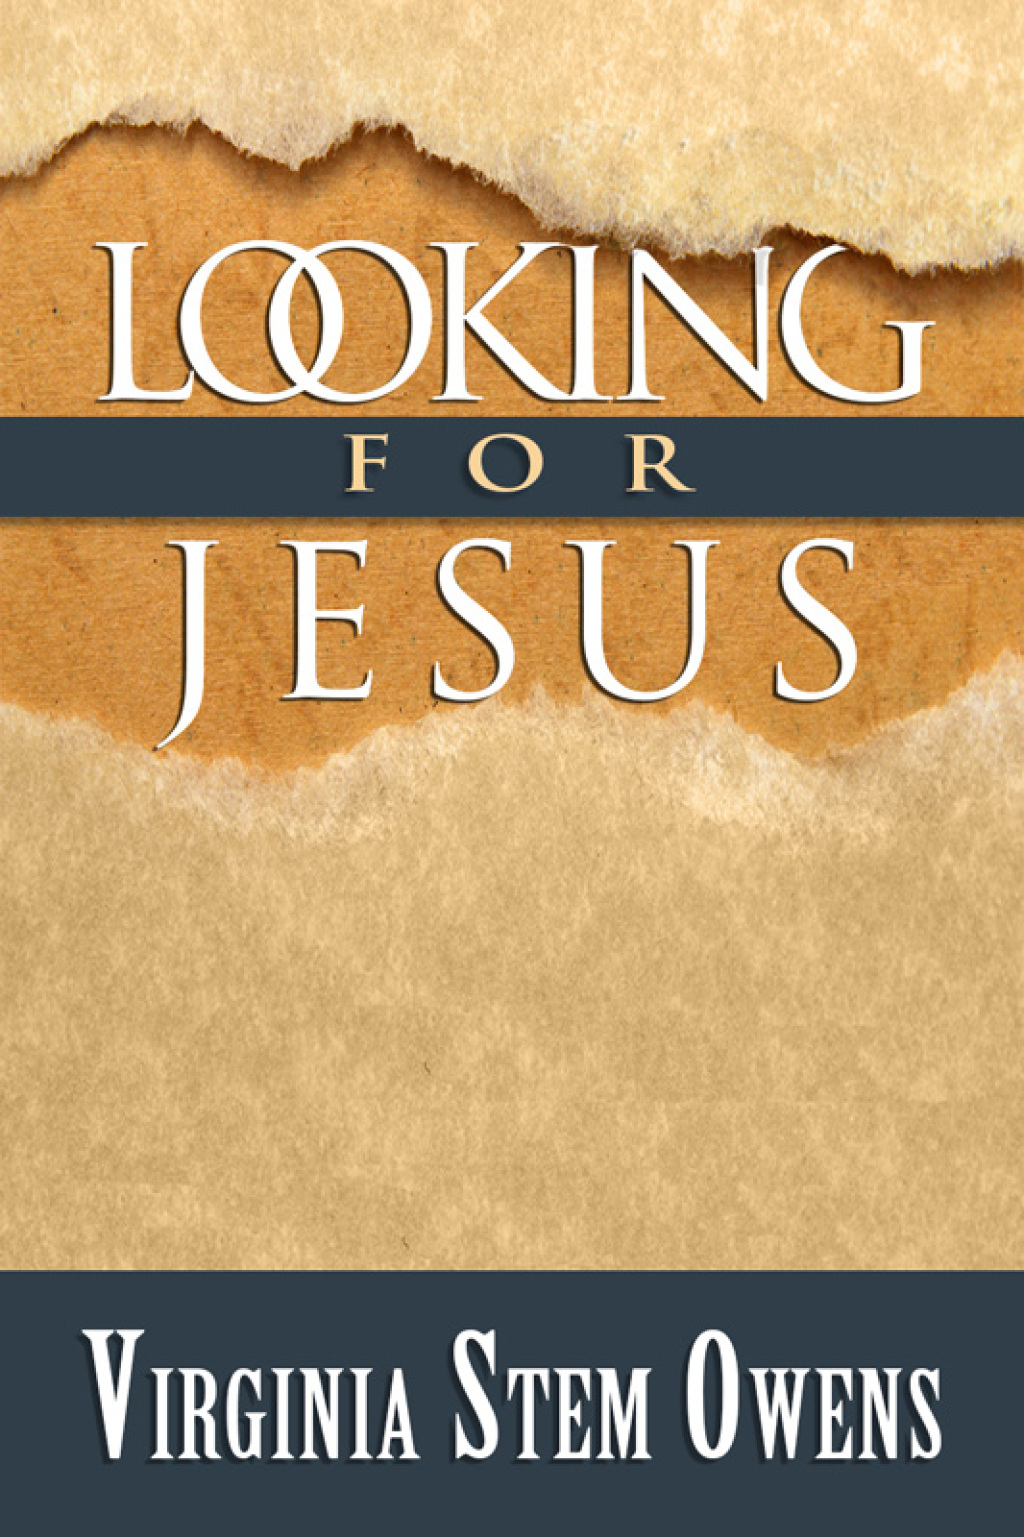 Looking for Jesus (eBook) - Virginia Stem Owens,